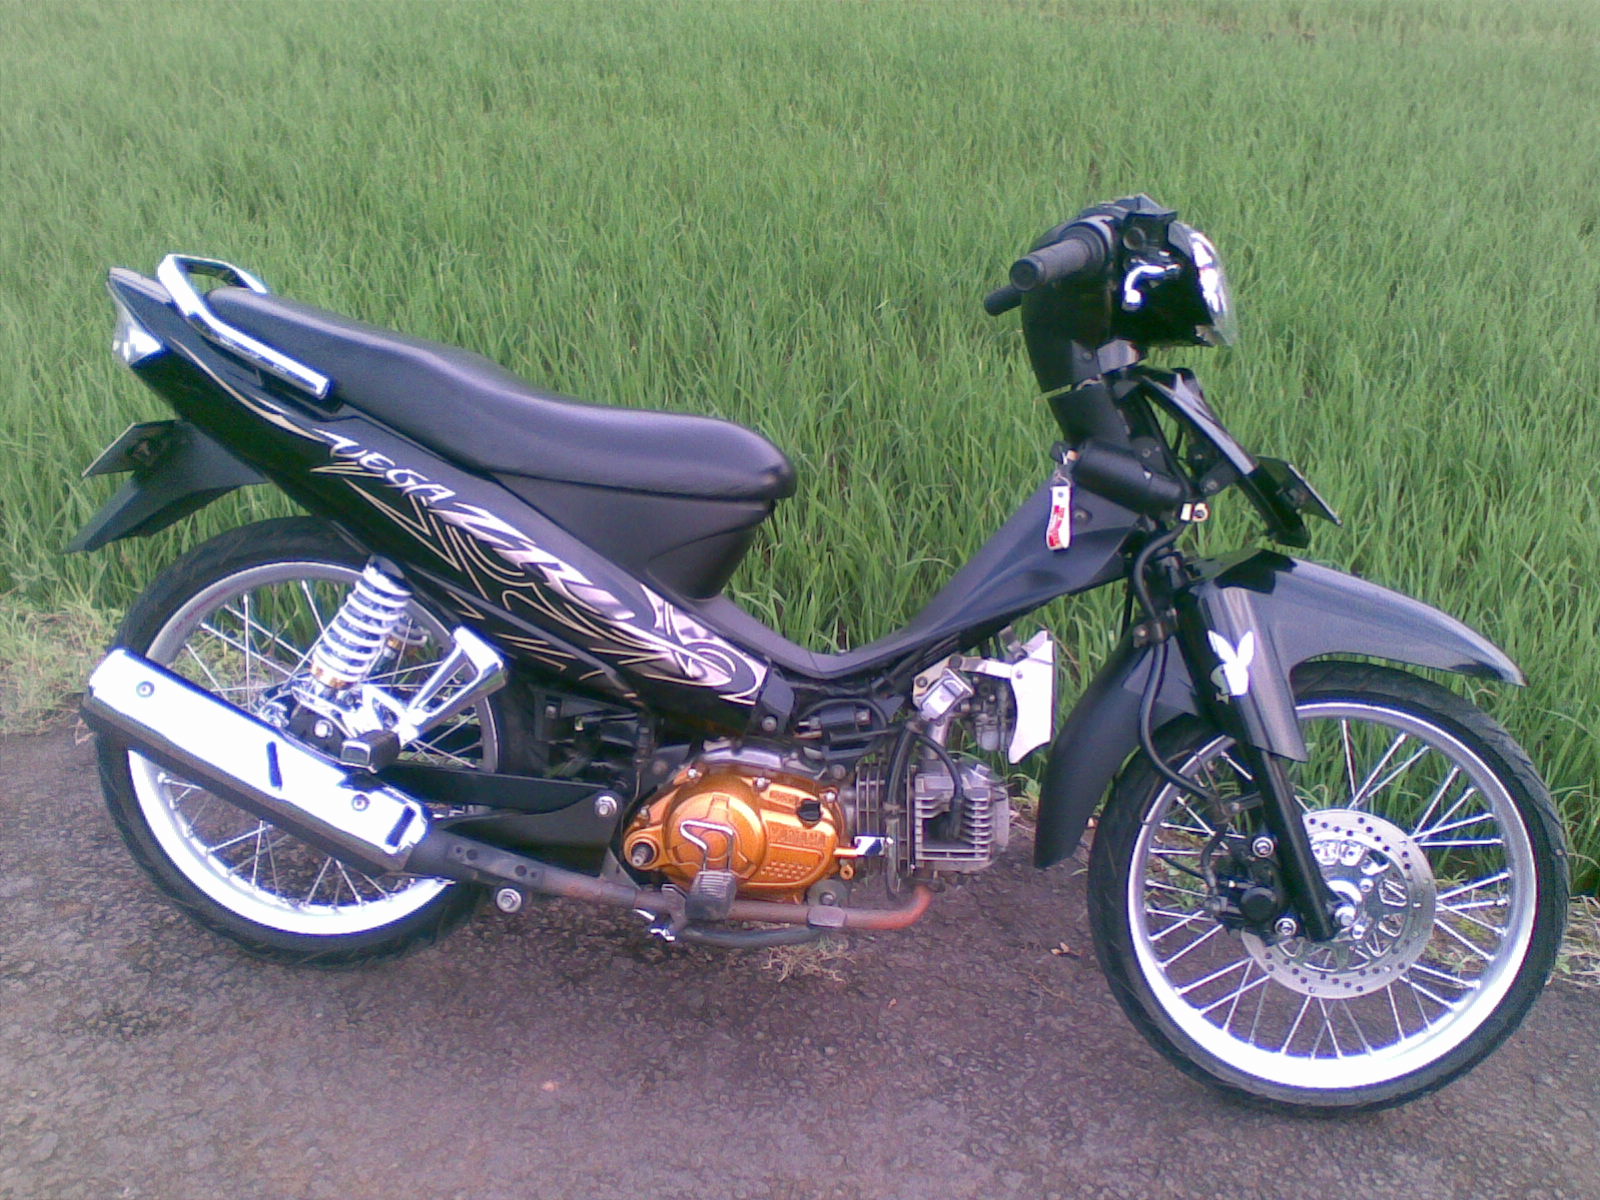 Foto Foto Modifikasi Motor Yamaha Vega Zr